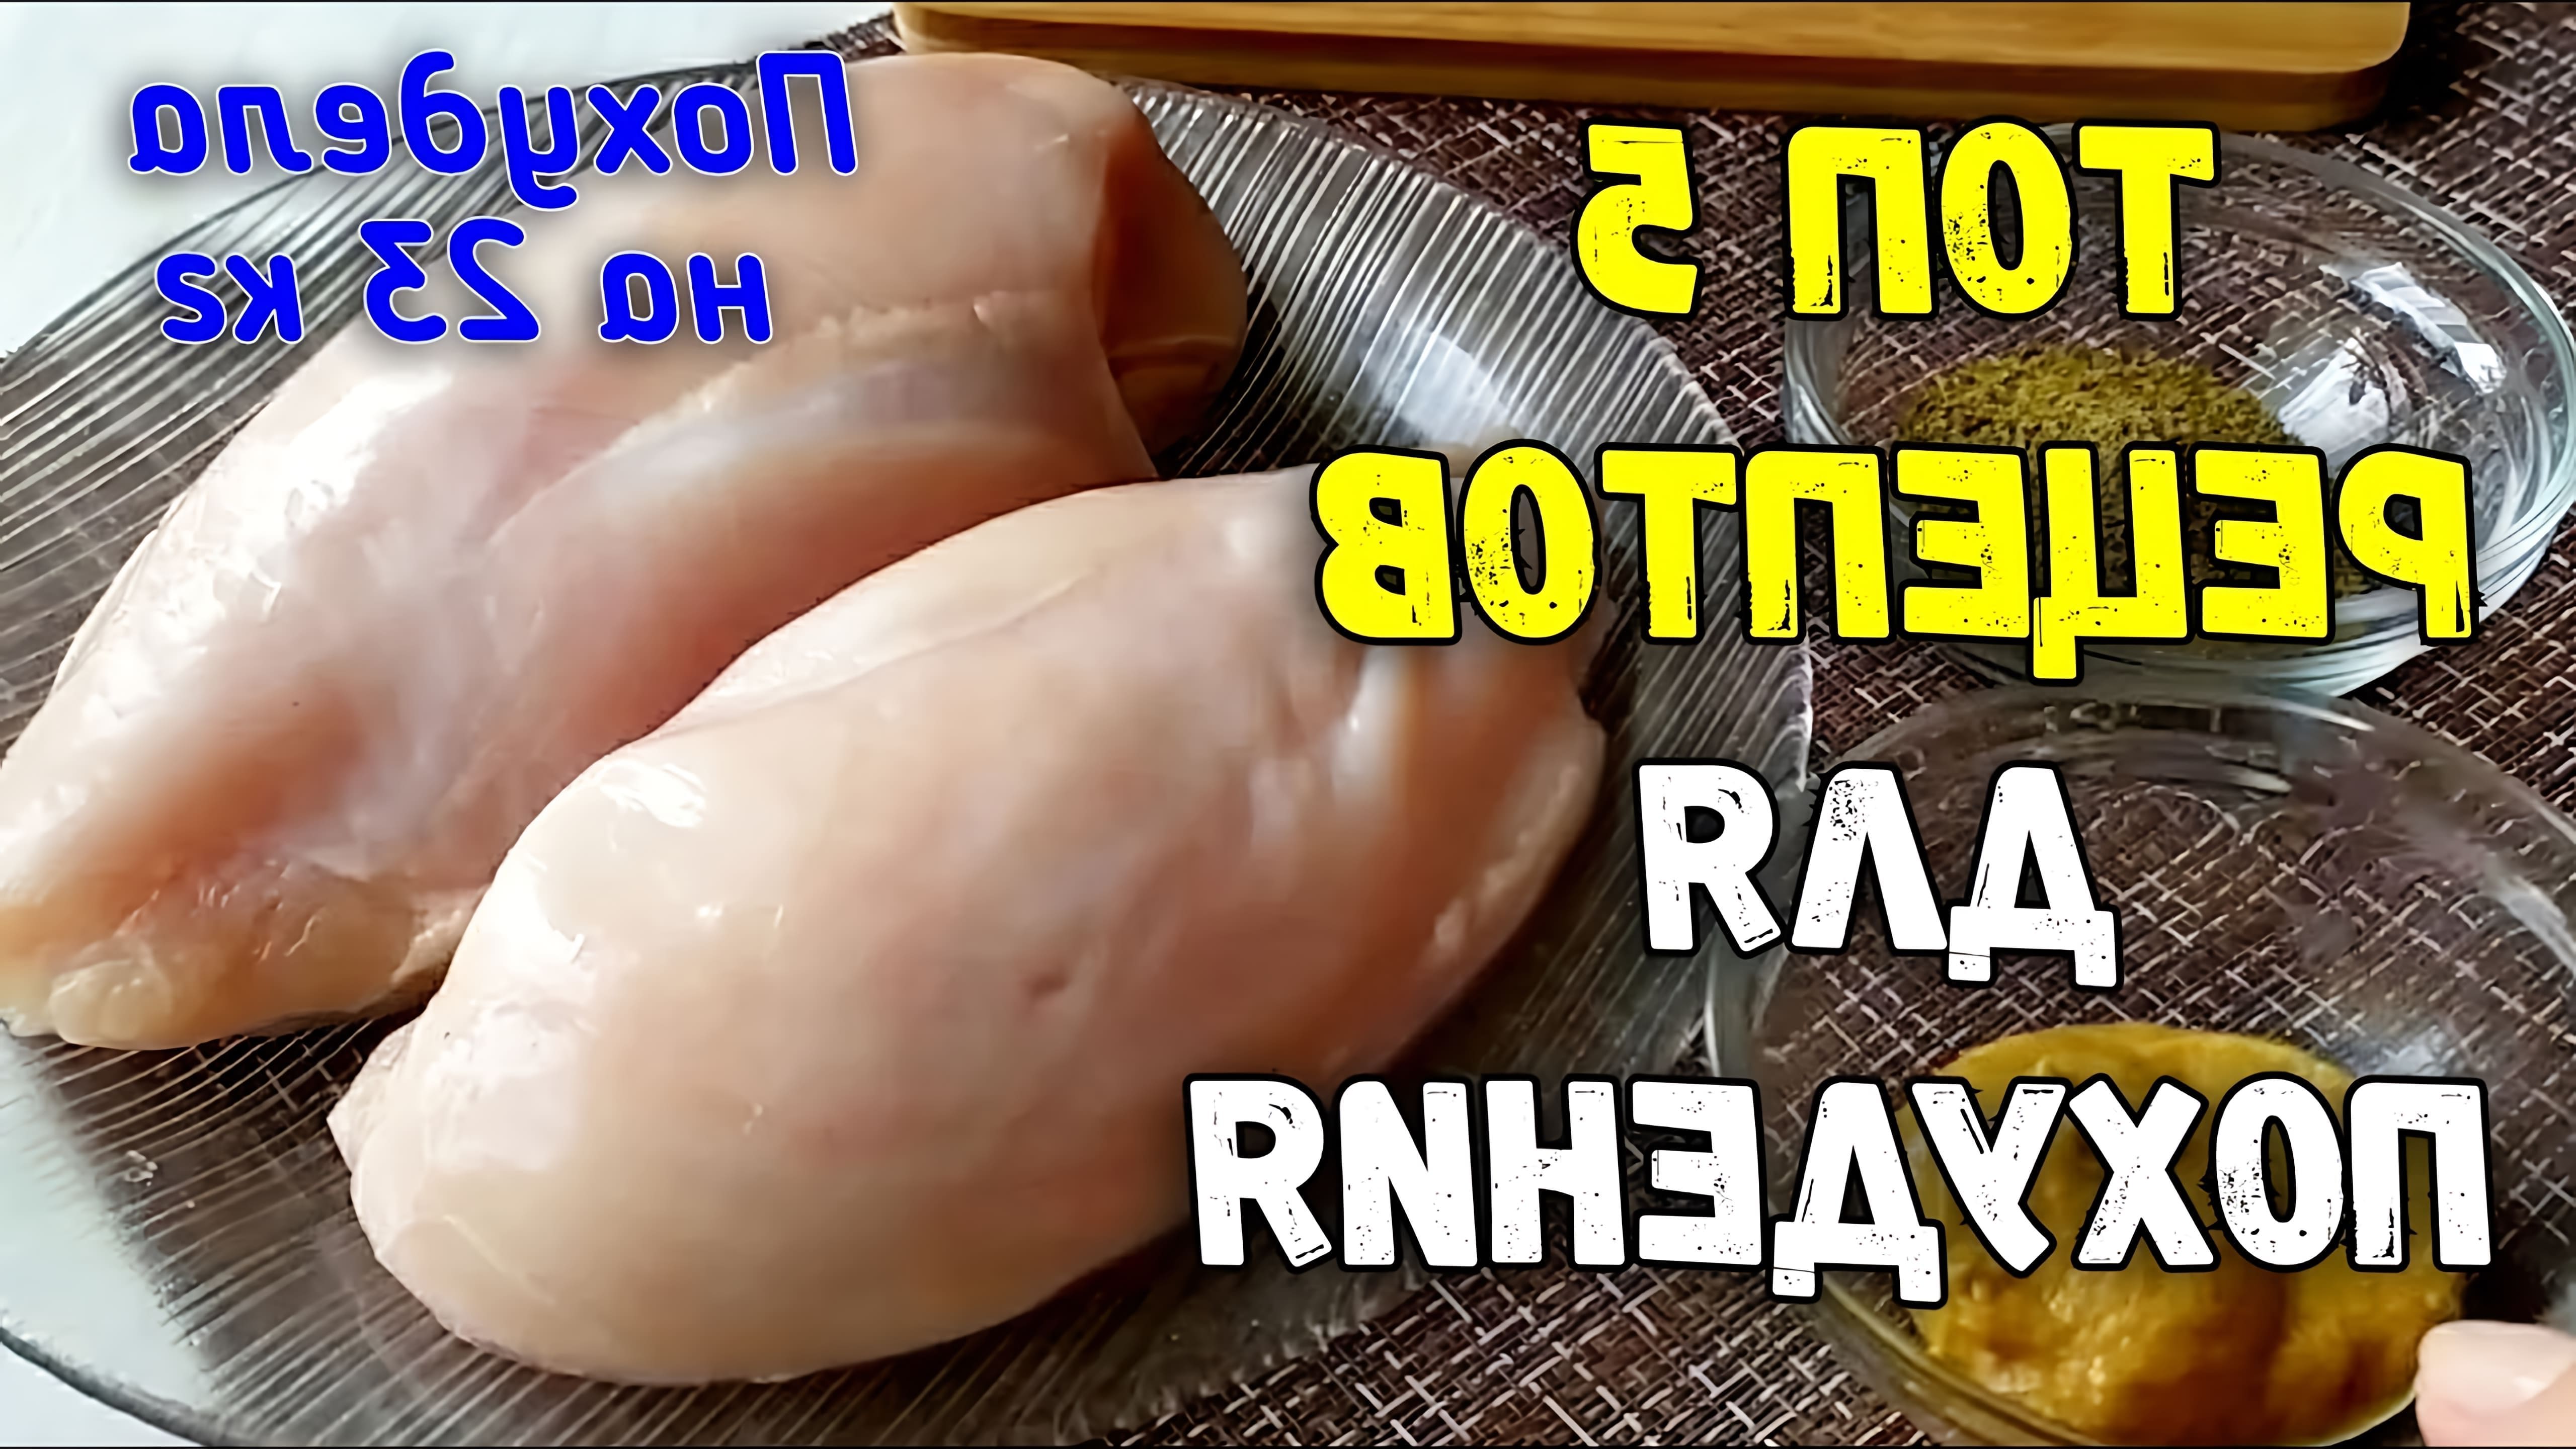 Видео представляет 5 рецептов с использованием филе курицы, которые являются здоровыми, но вкусными вариантами для похудения